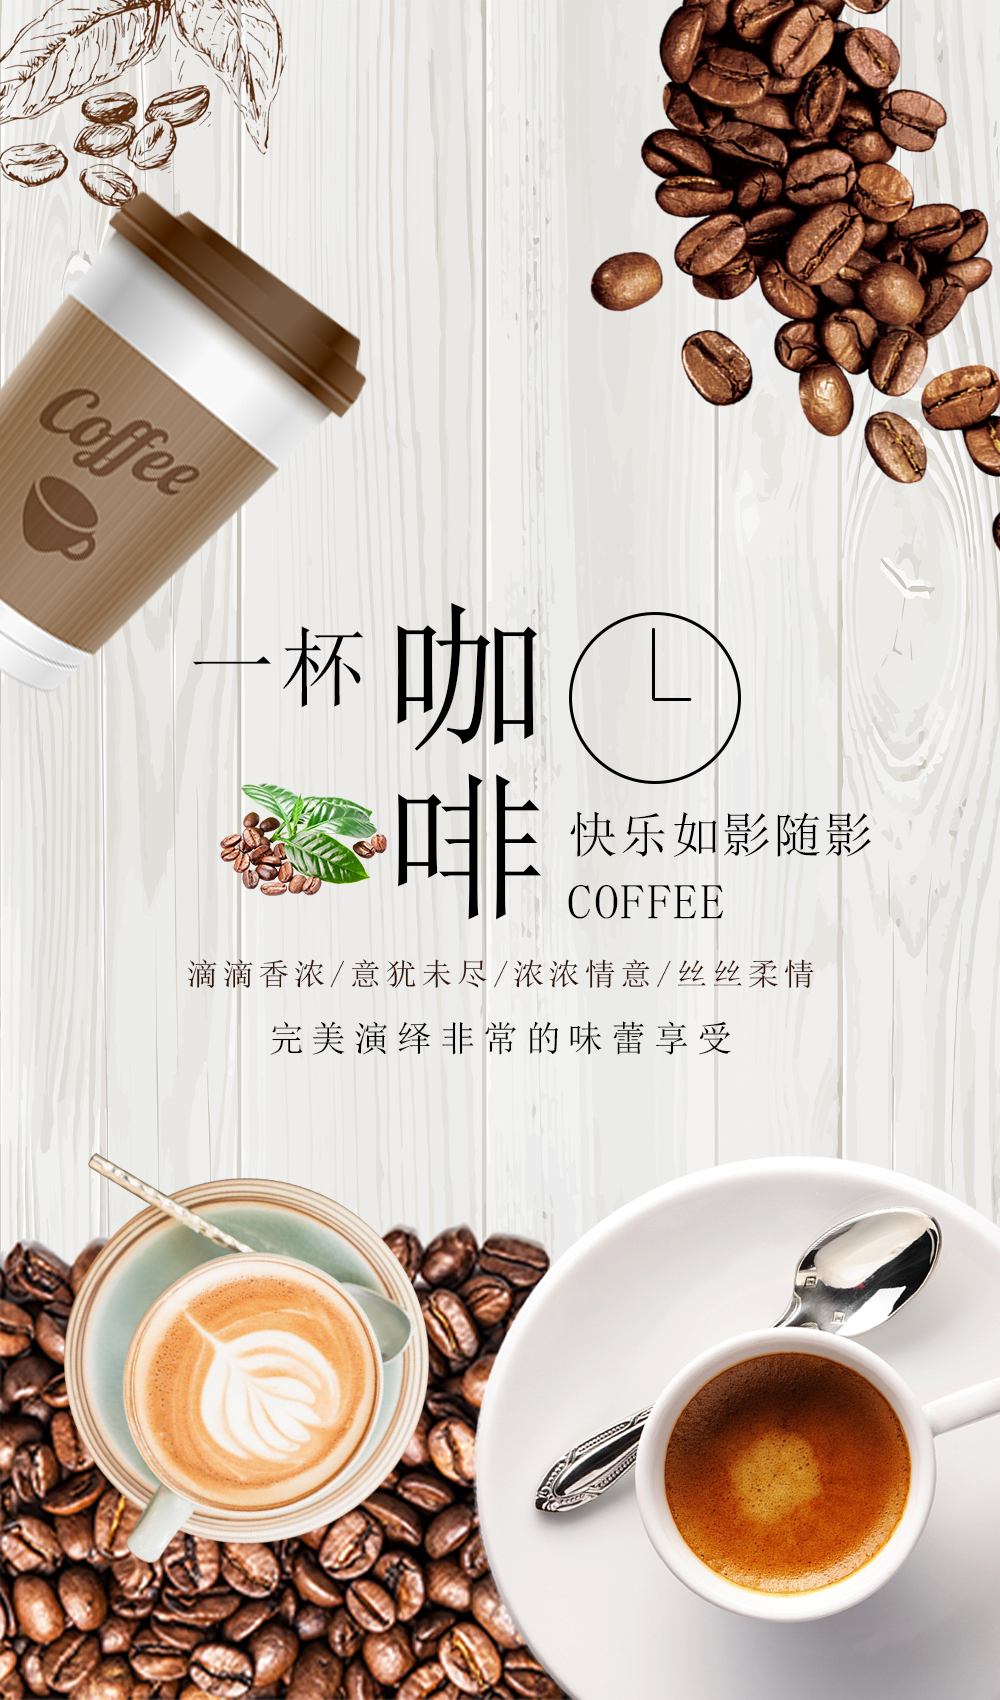 淘宝美工y252524咖啡屋宣传海报作品